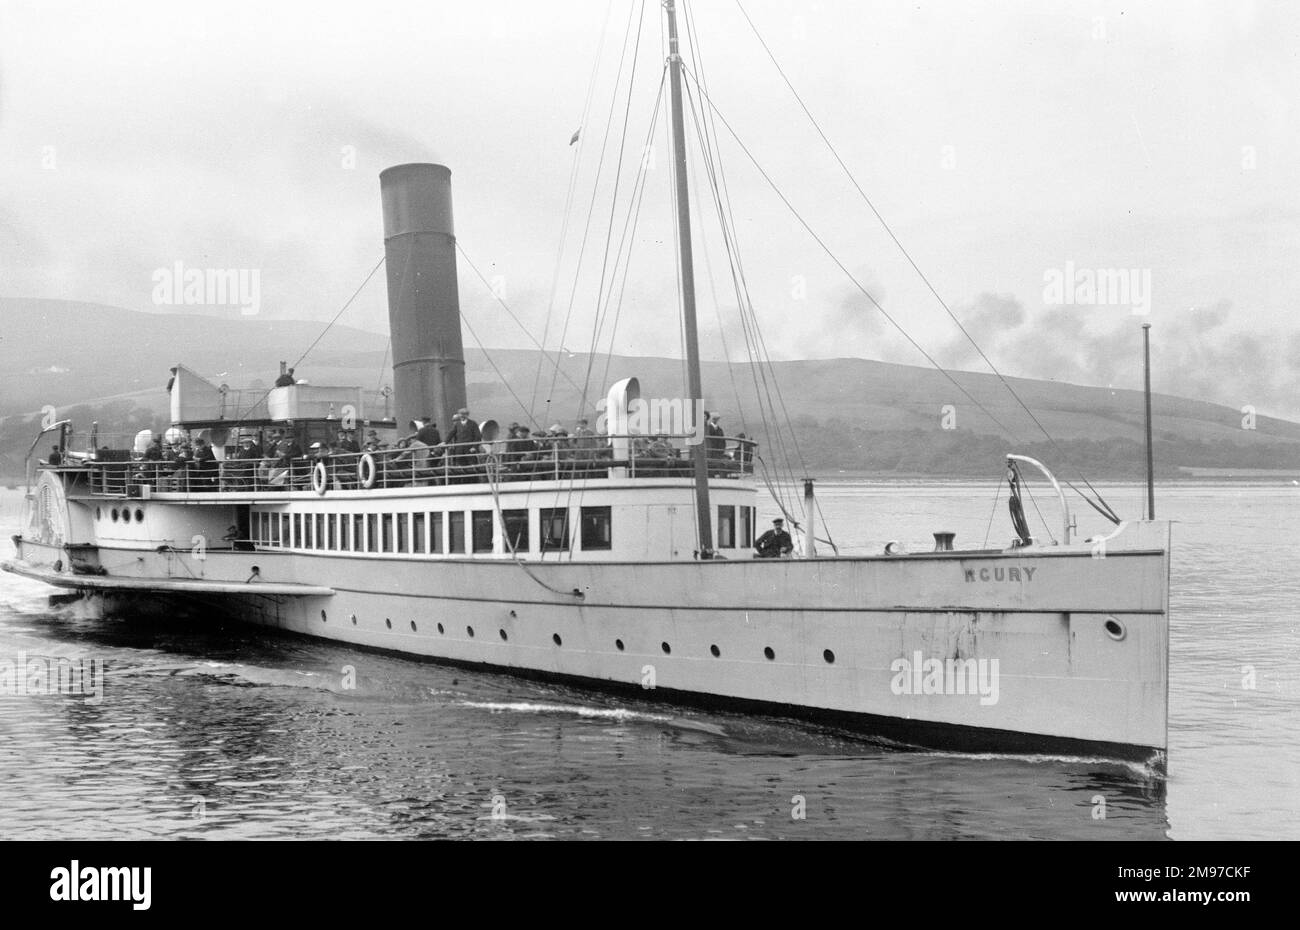 Le bateau à aubes Clyde 'Mercury' approche d'une jetée dans l'ouest de l'Écosse en août 1913 Banque D'Images